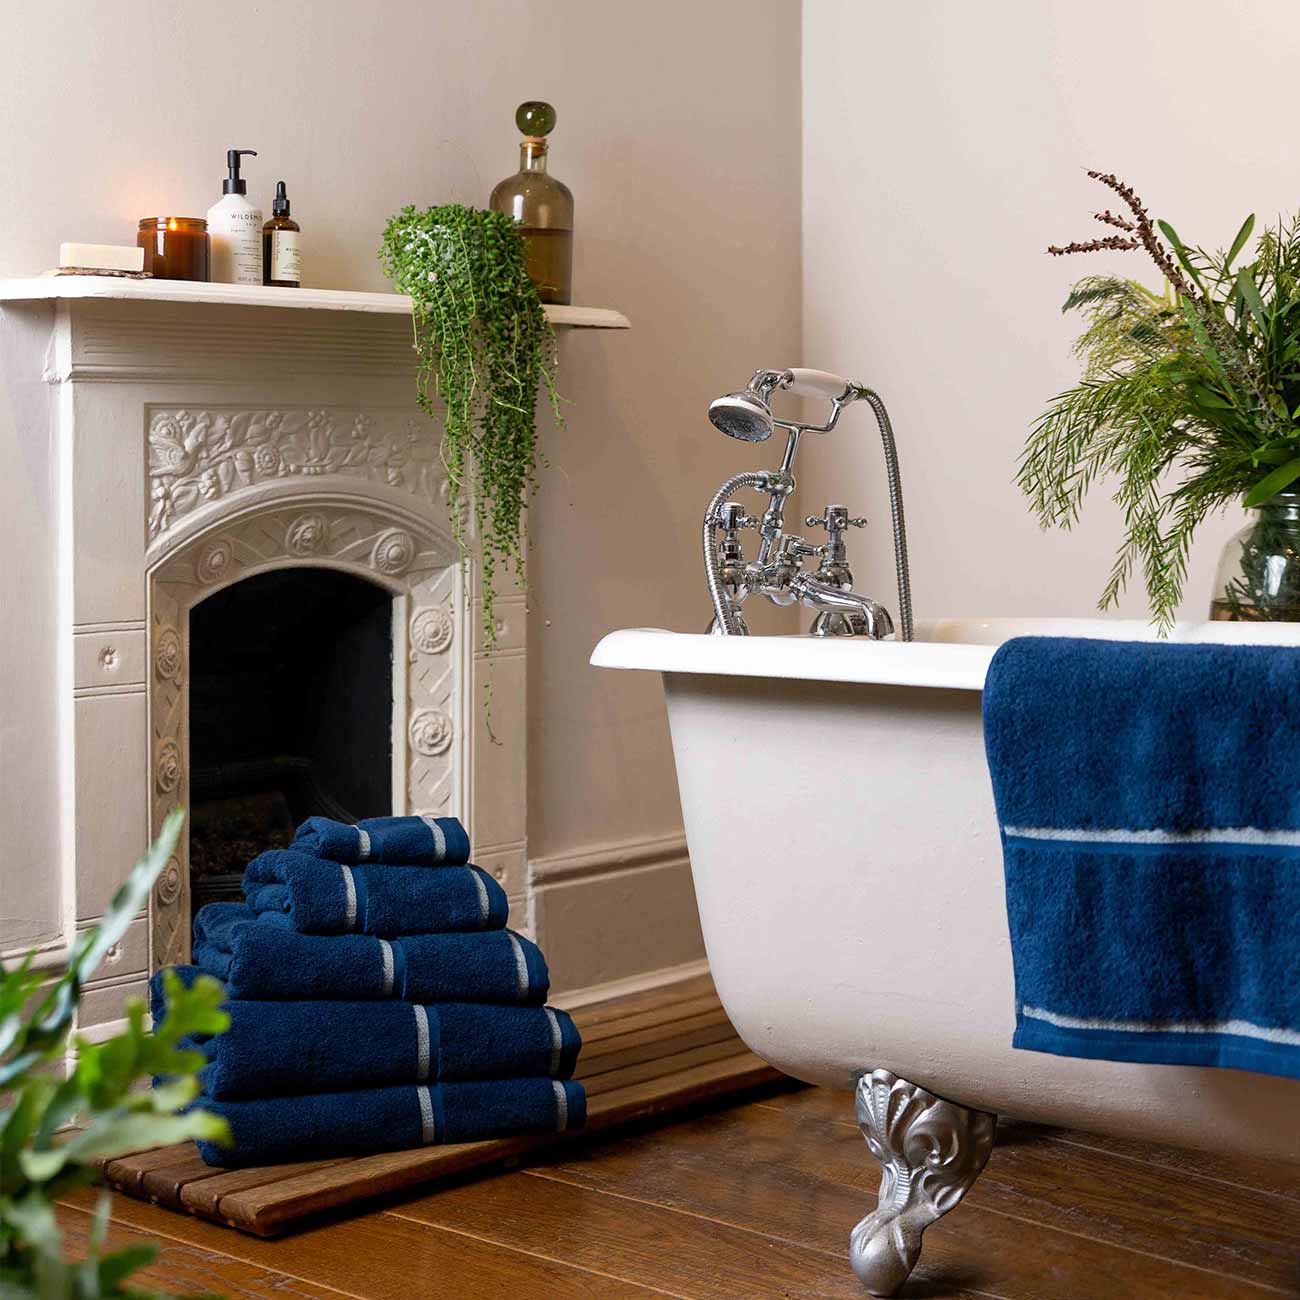 Moonlit Blue Towels and Bath Mat